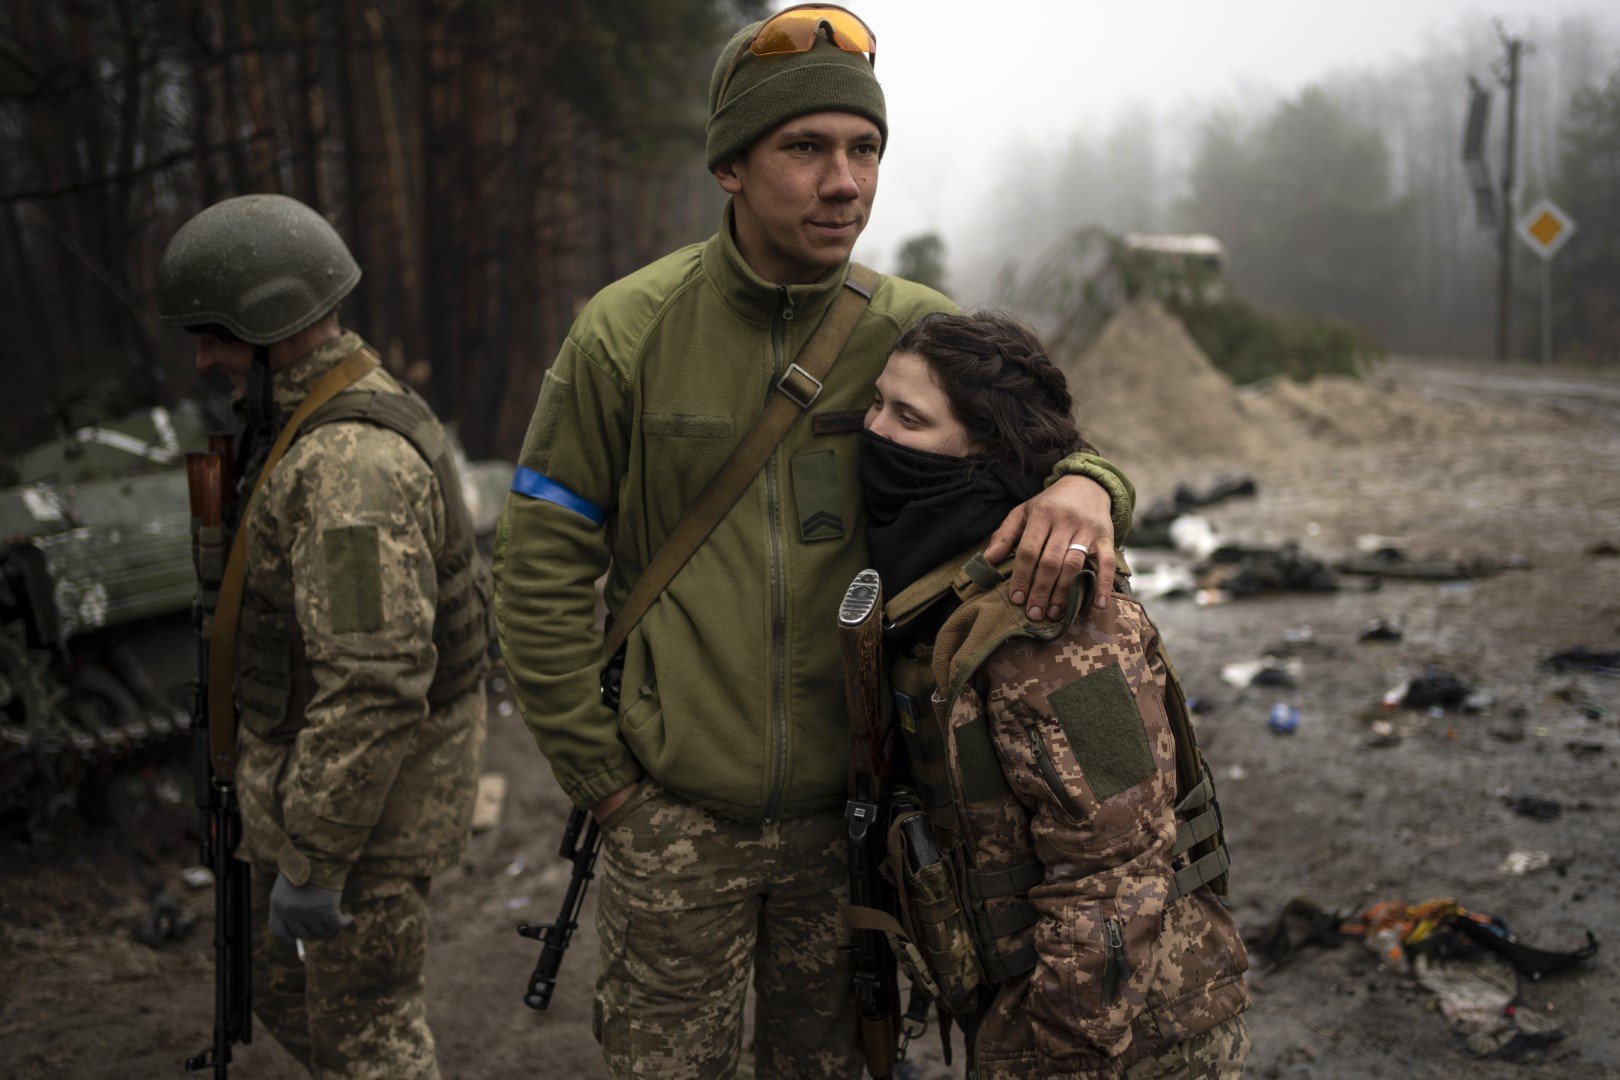 Войници от украинската армия, 23-годишният Игор, прегръща съпругата си Даша, на 22 години, след като са извършили проверка след изтеглянето на руските войски от селата в покрайнините на Киев в петък, 1 април 2022 г.